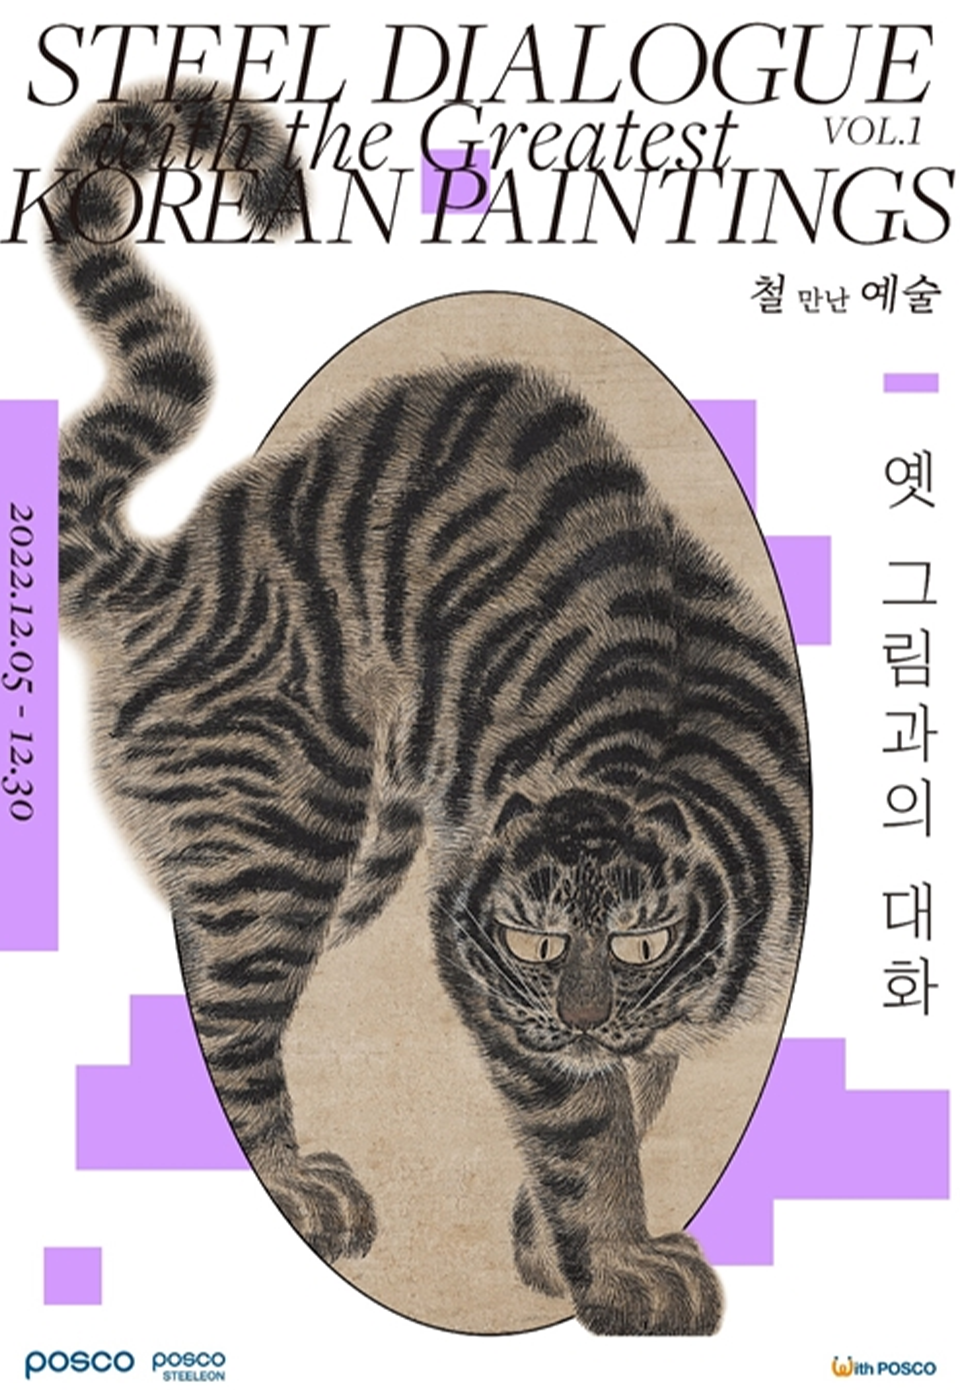 포스아트 한국미술 레플리카 특별전 포스터로 STEEL DIALOGUE THE GREATEST KOREAN PAINTINGS 철 만난 예술 옛 그림과의 대화 라고 적힌 포스터로 가운데는 호랑이 그림이 박혀있다.